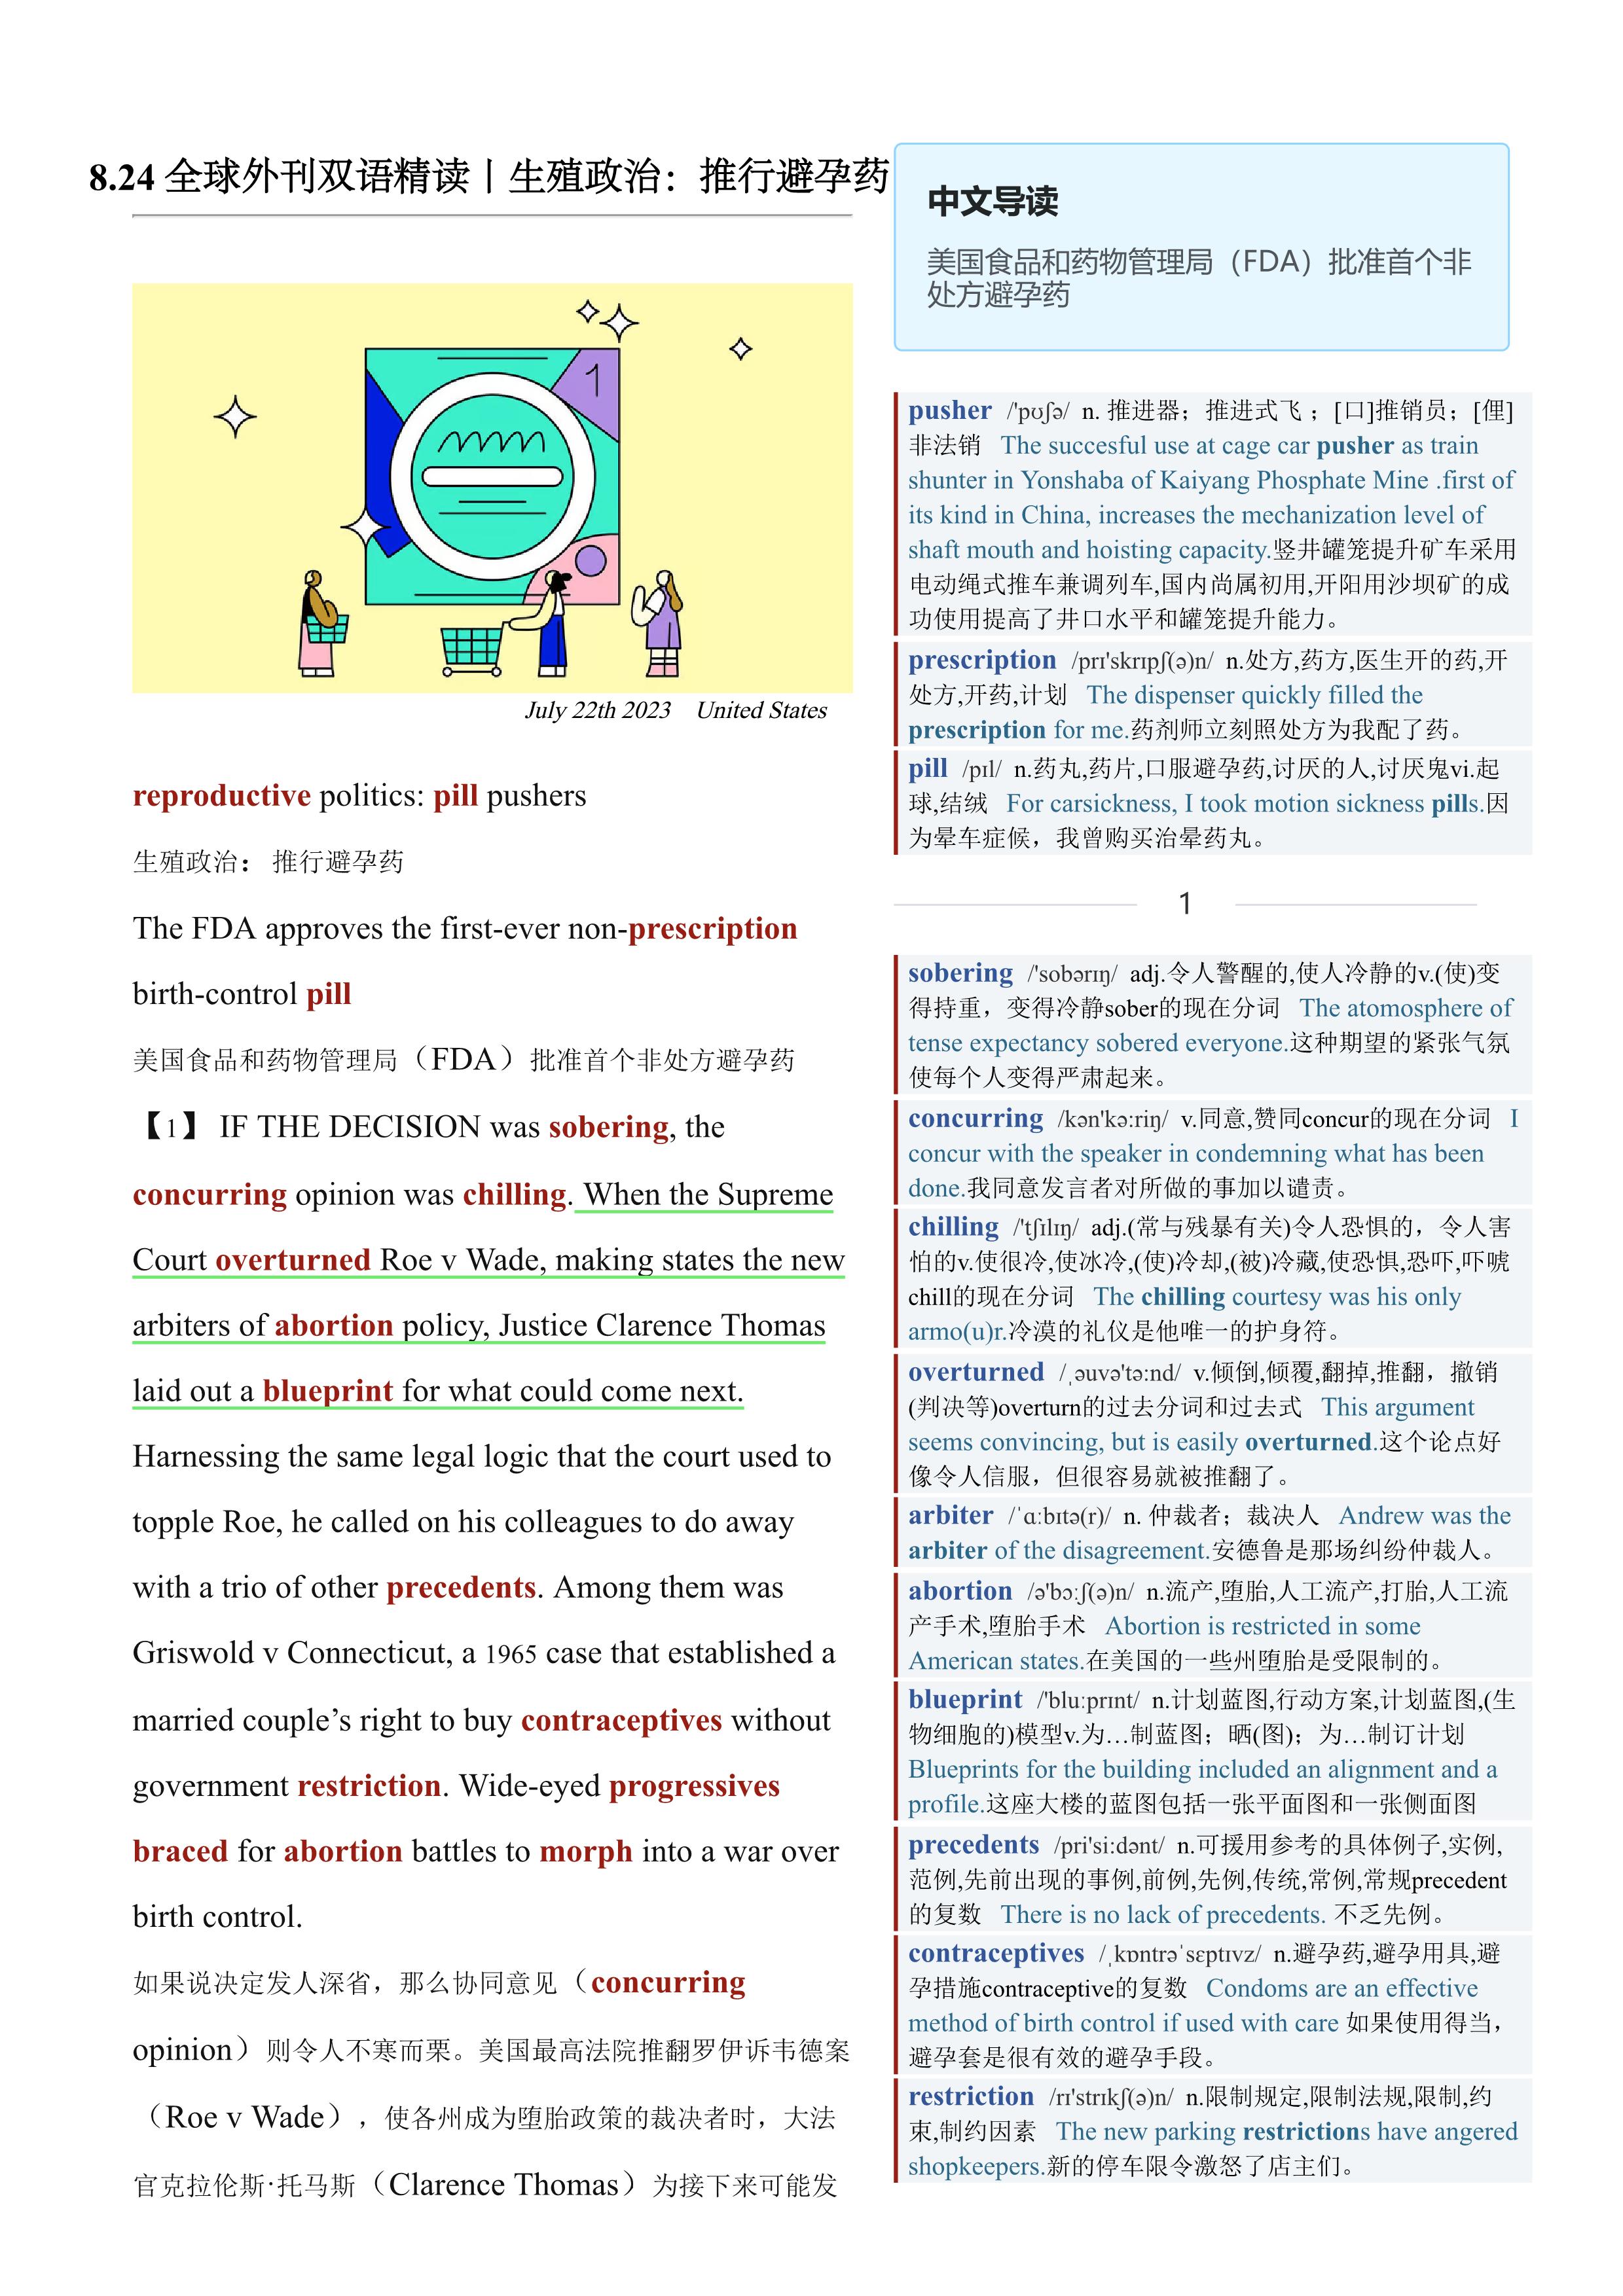 2023.08.24 经济学人双语精读丨生殖政治：推行避孕药 (.PDF/DOC/MP3)